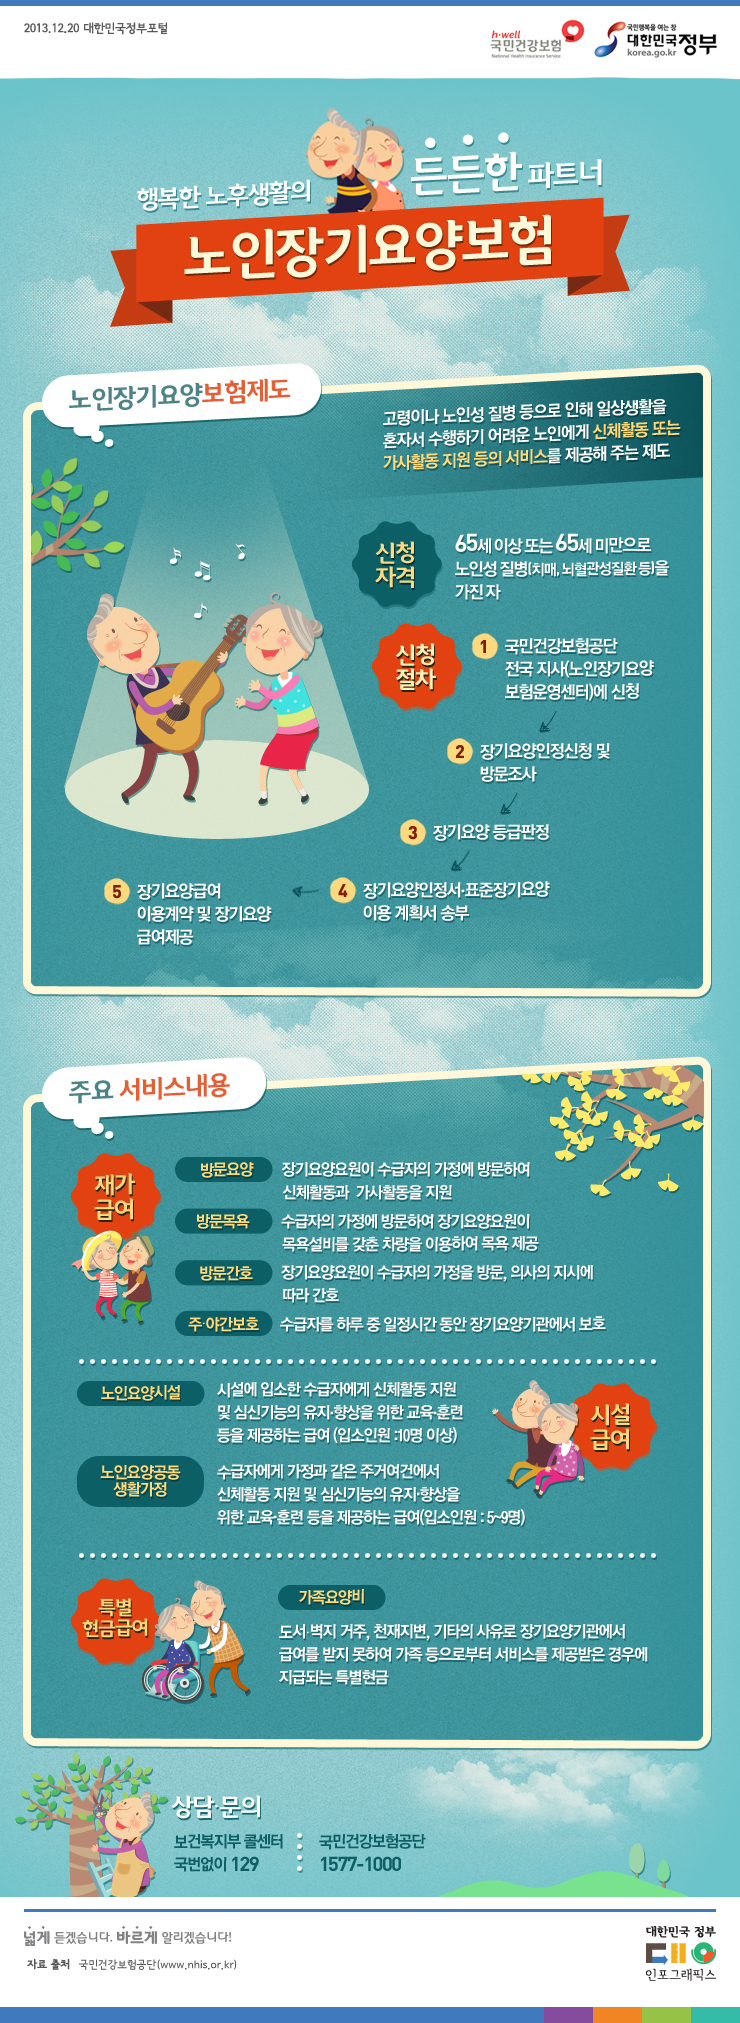 노인장기요양보험 홍보동영상① '효에 대한 새로운 약속'편 | 성남간호방문요양센터